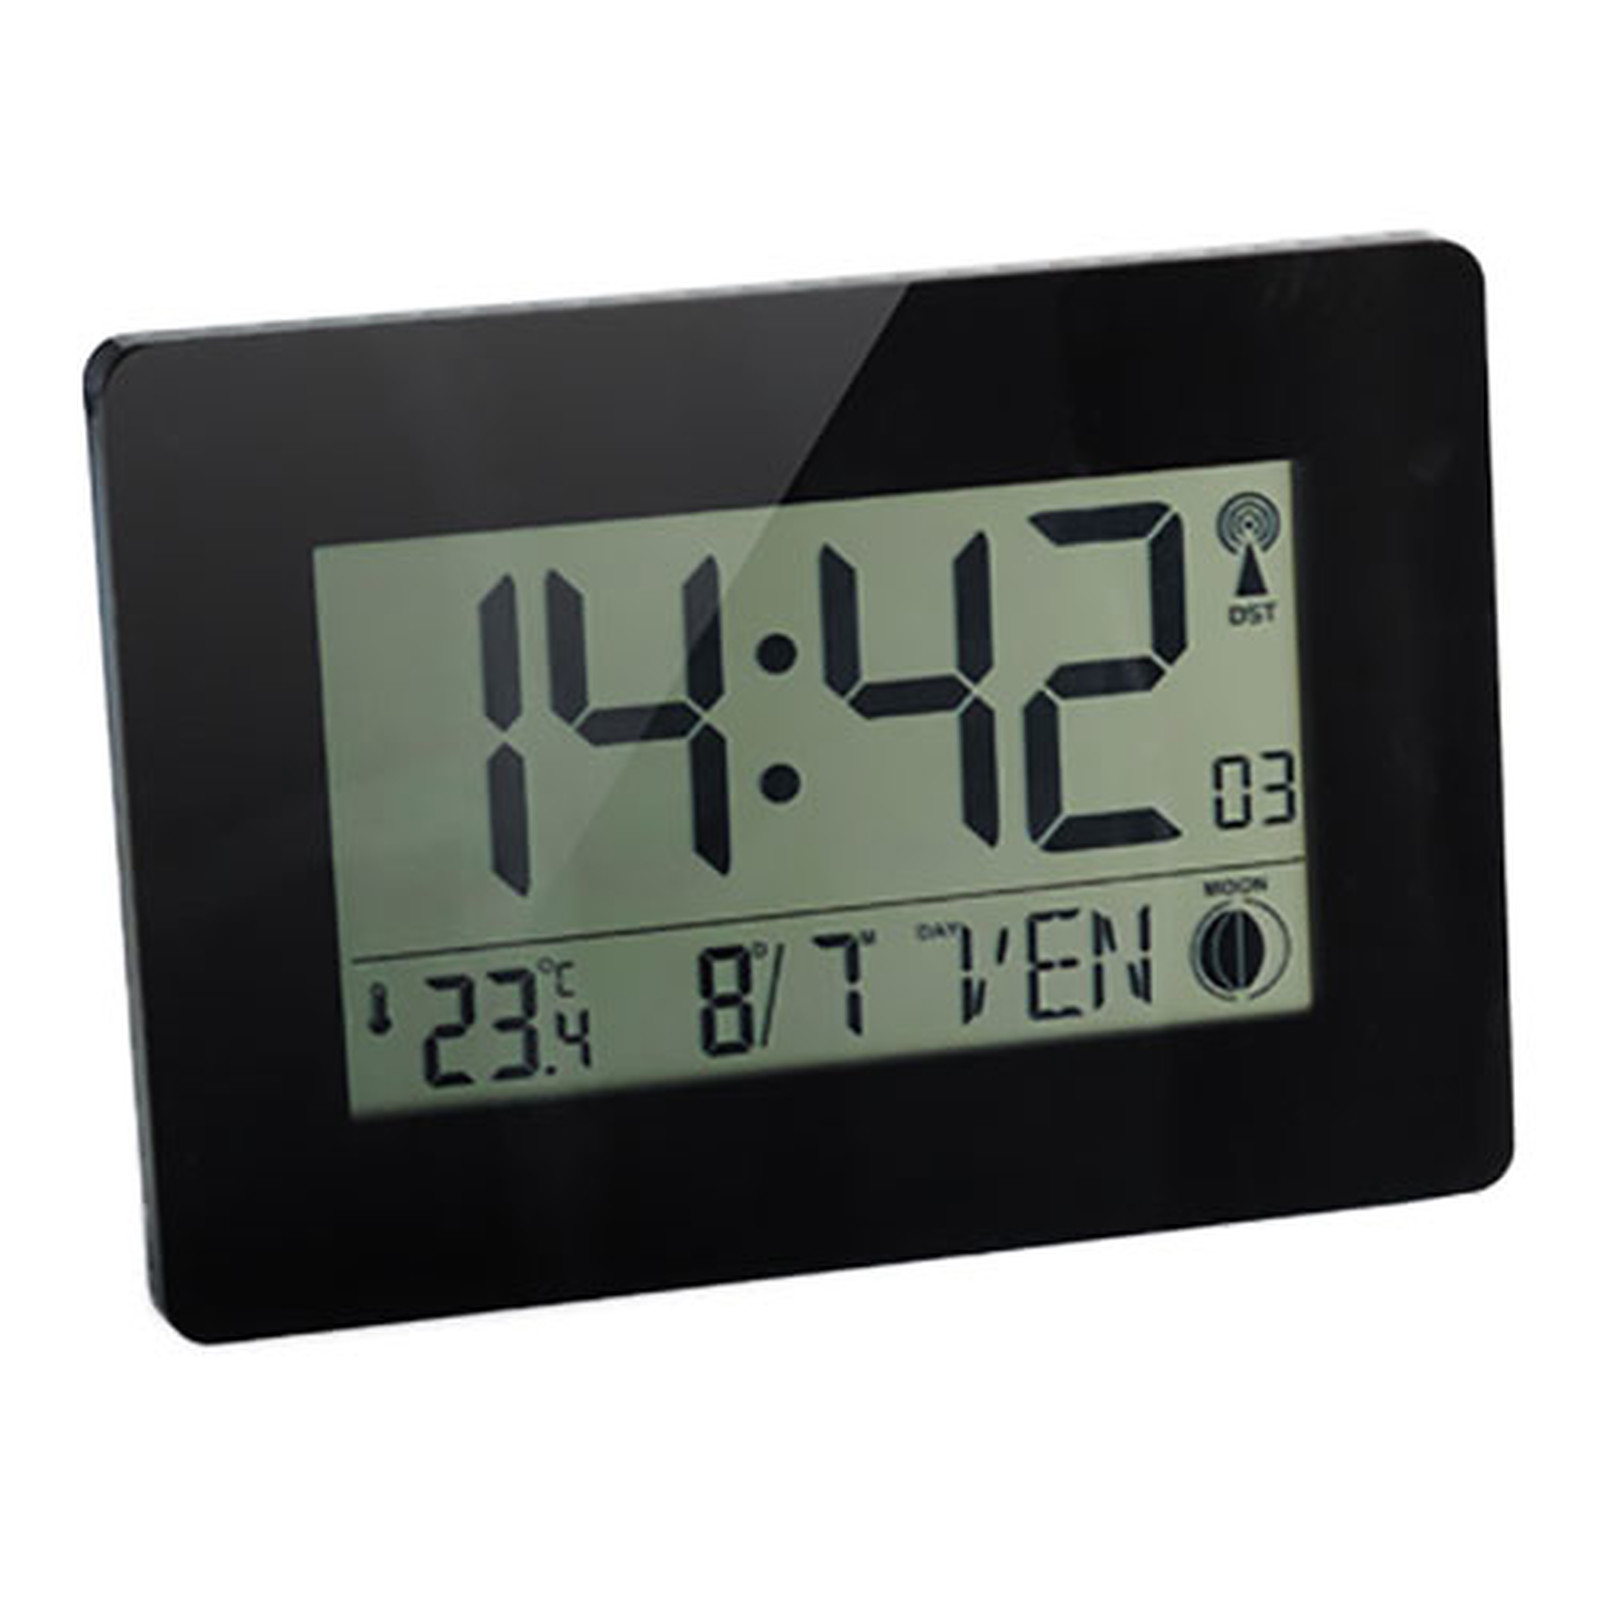 Orium Horloge RC Digitale Austin - Accessoires et ergonomie Orium